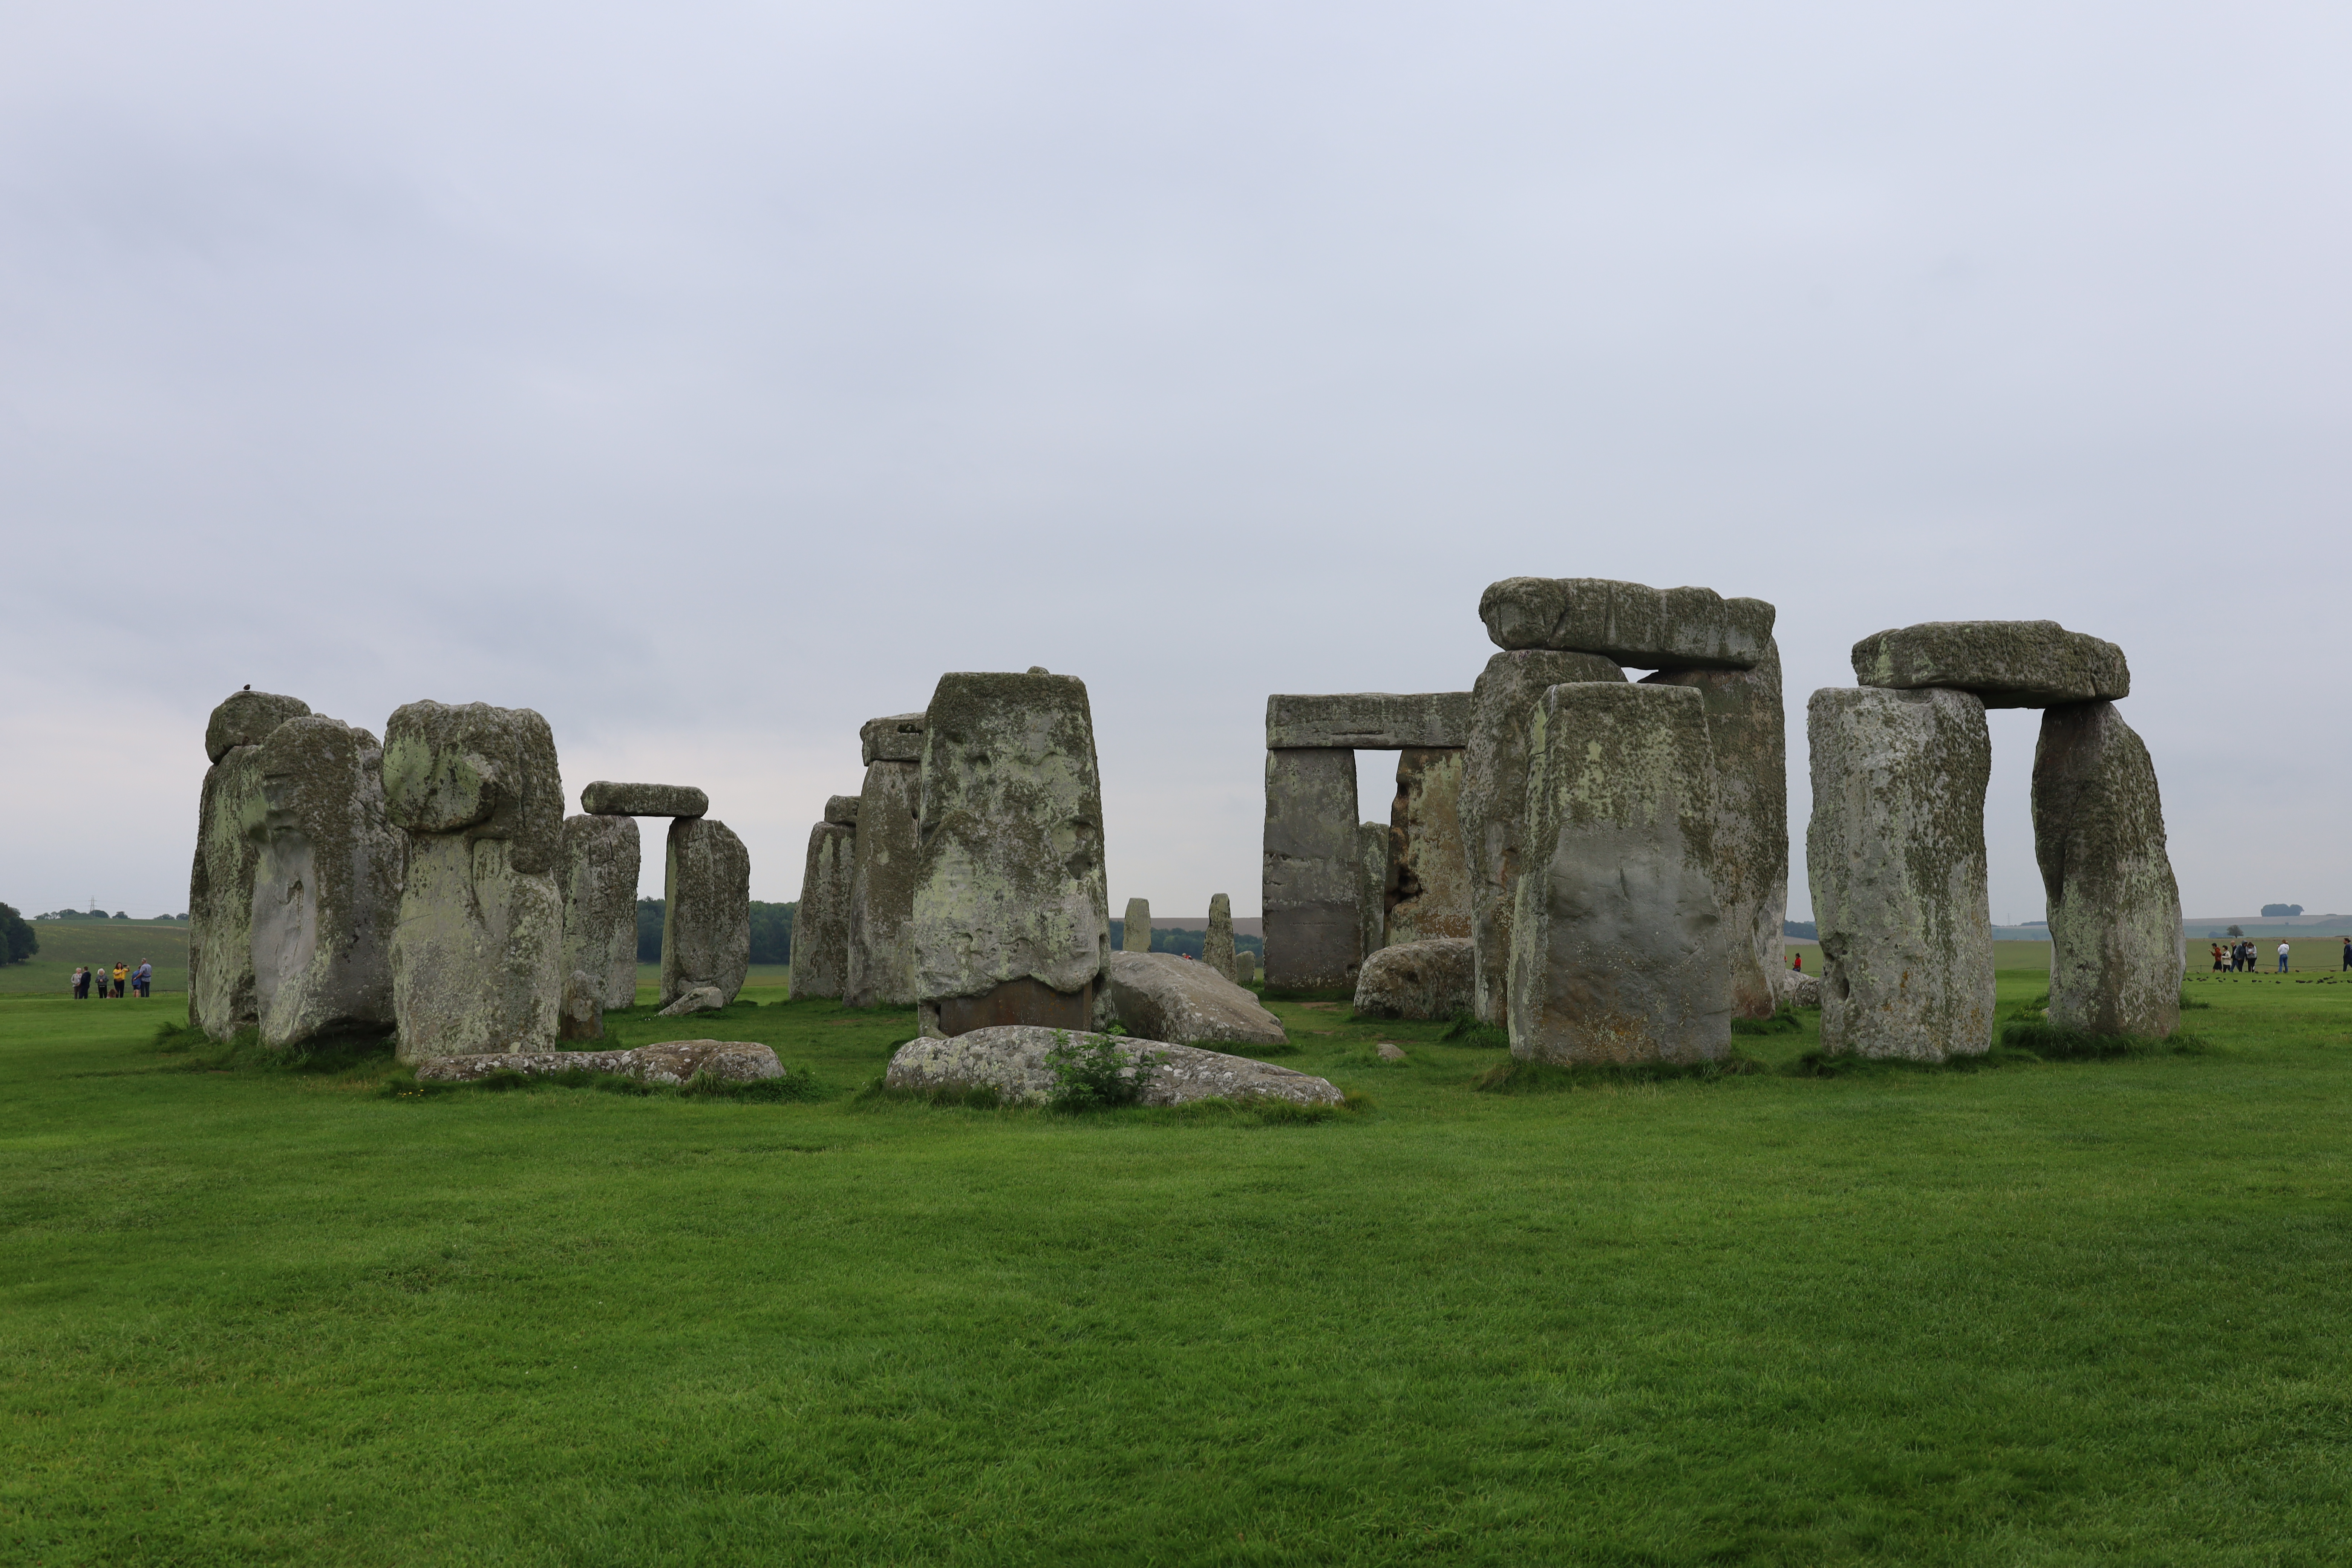 Cinq mégastructures de l’âge de pierre européen encore présentes aujourd’hui